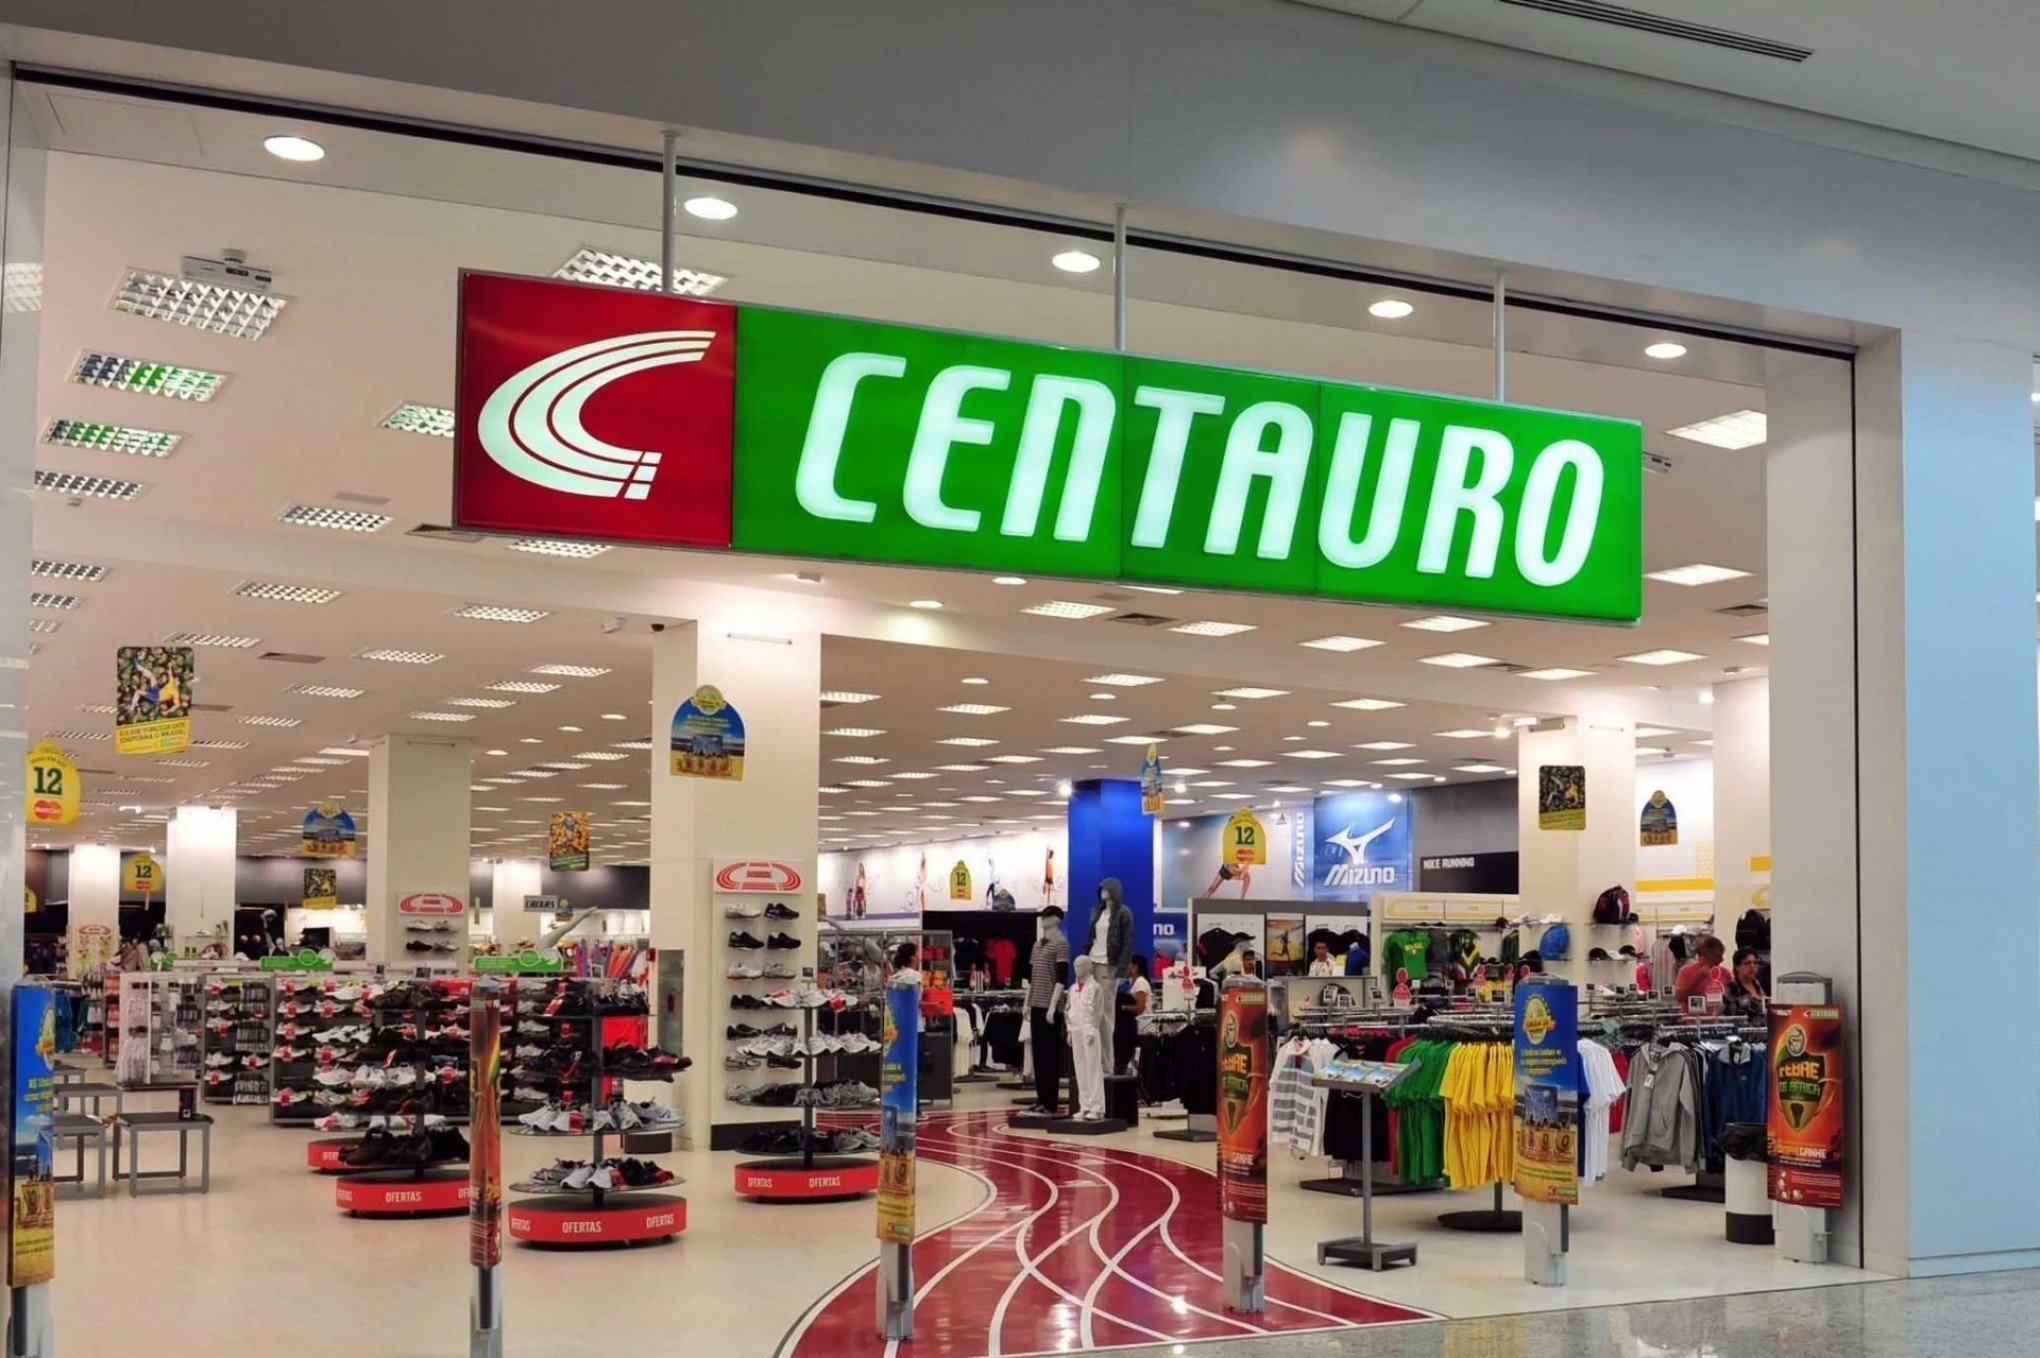 Dívida da Centauro chega a R$ 715 milhões; há risco para os clientes? -  Exclusivo